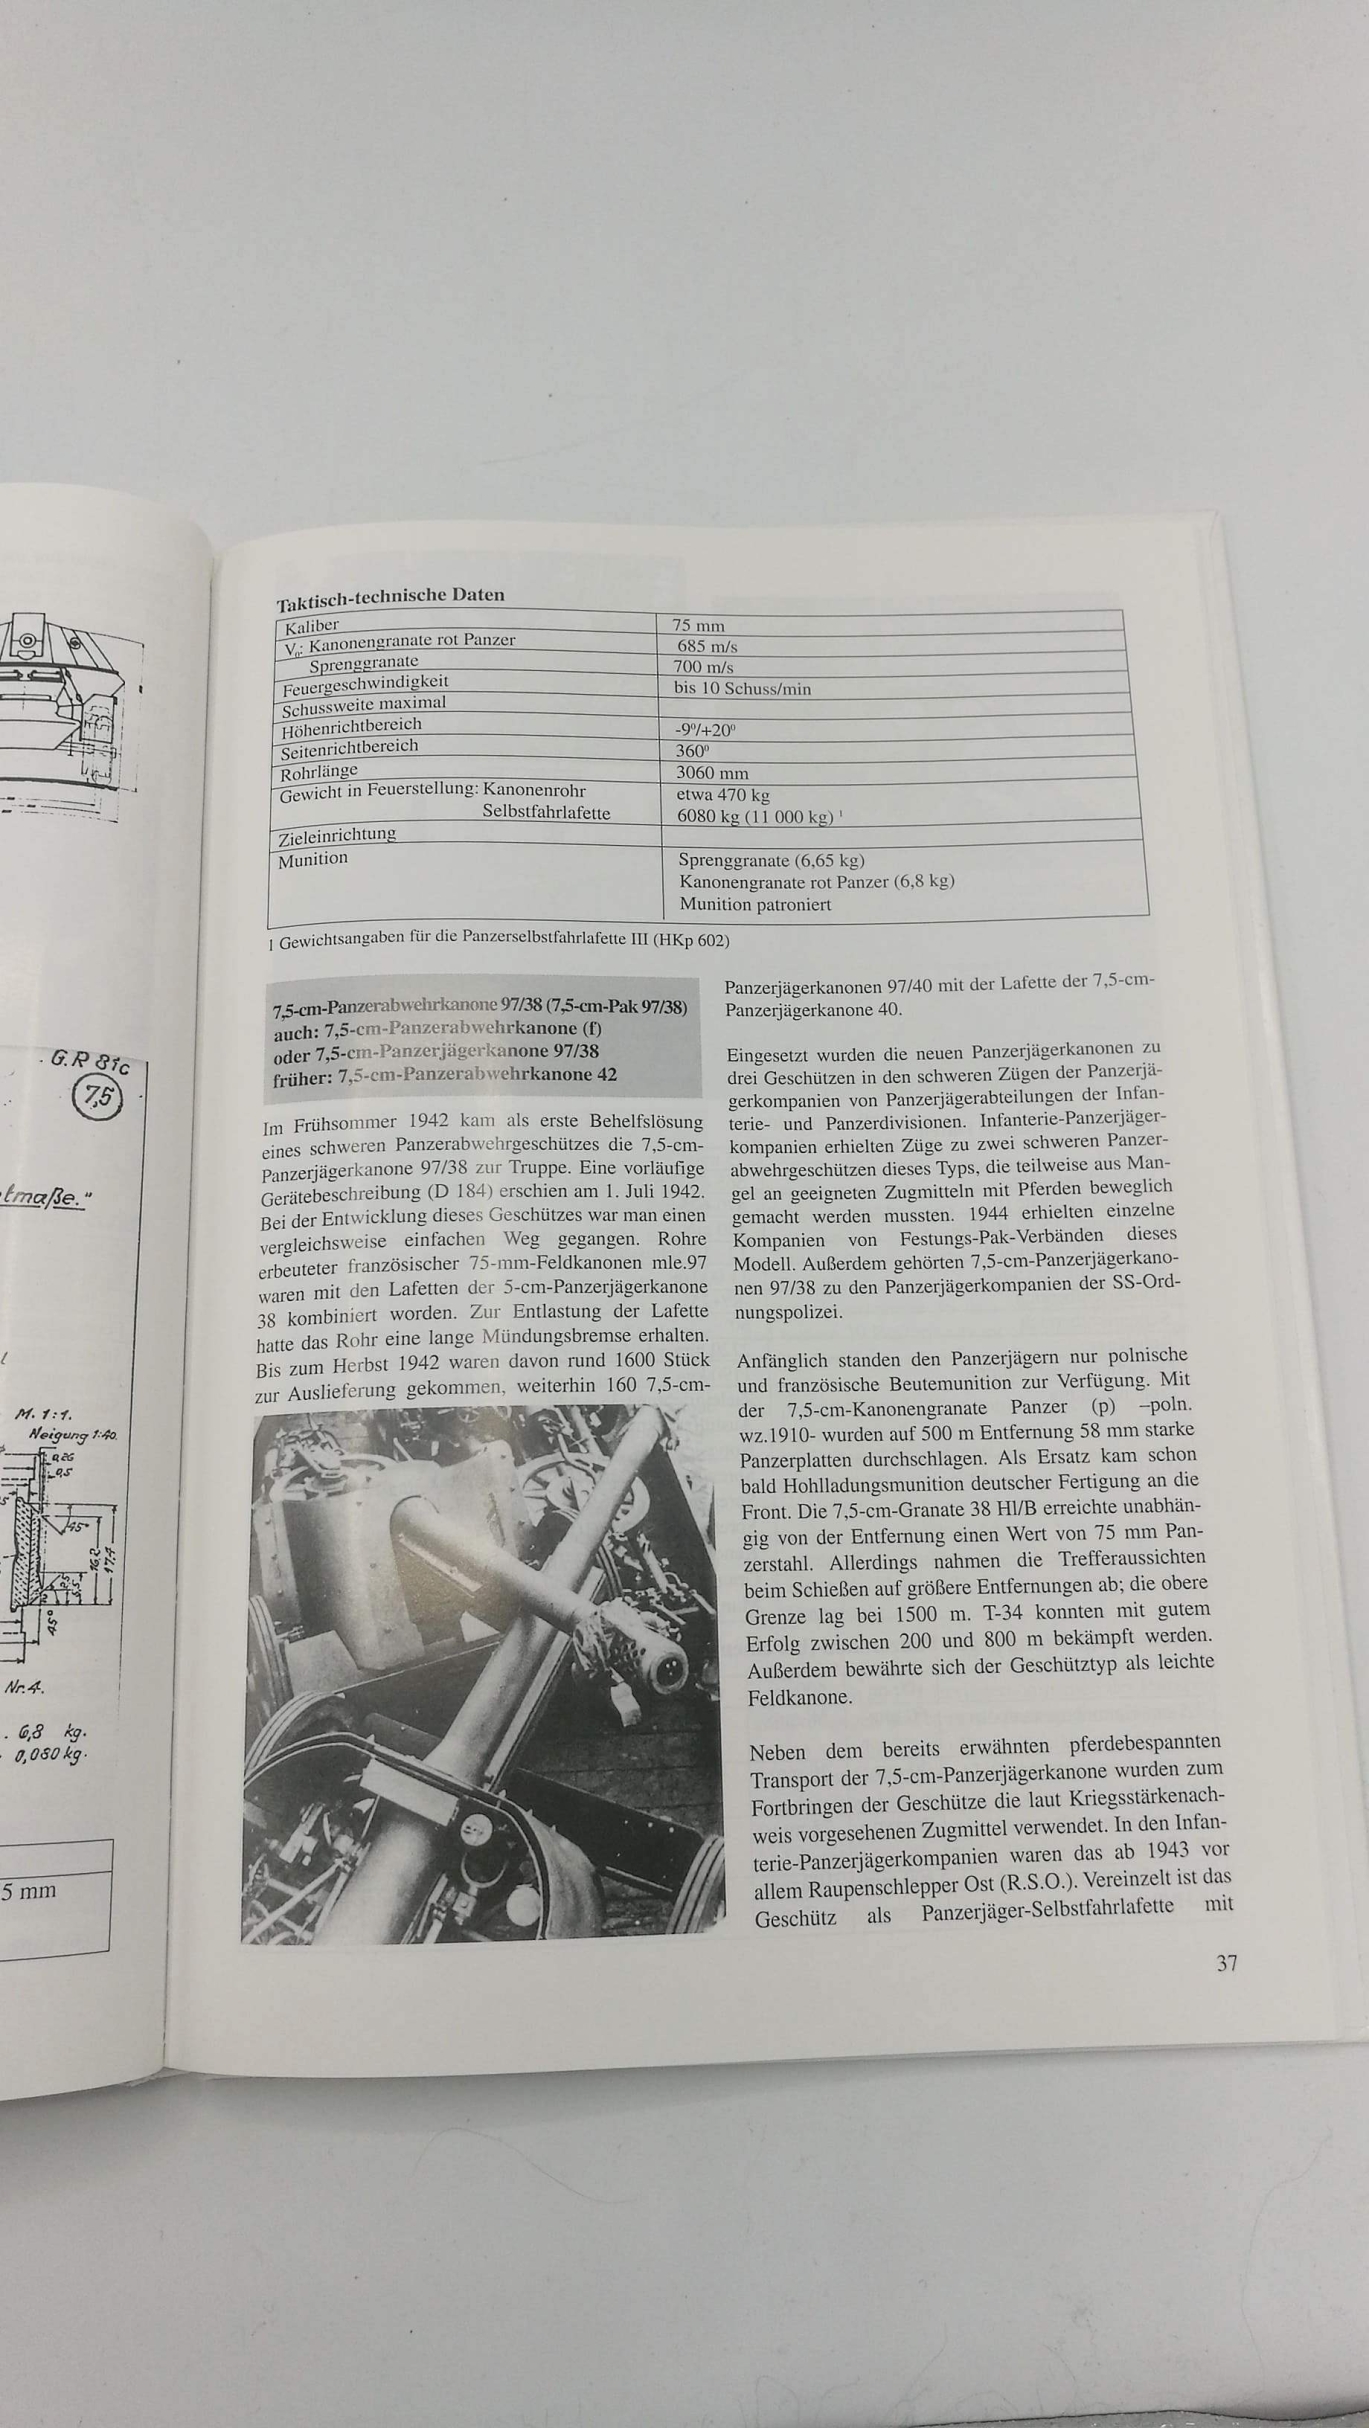 Fleischer, Wolfgang: Die deutsche Panzerjägertruppe 1935 - 1945 Katalog der Waffen, Munition und Fahrzeuge